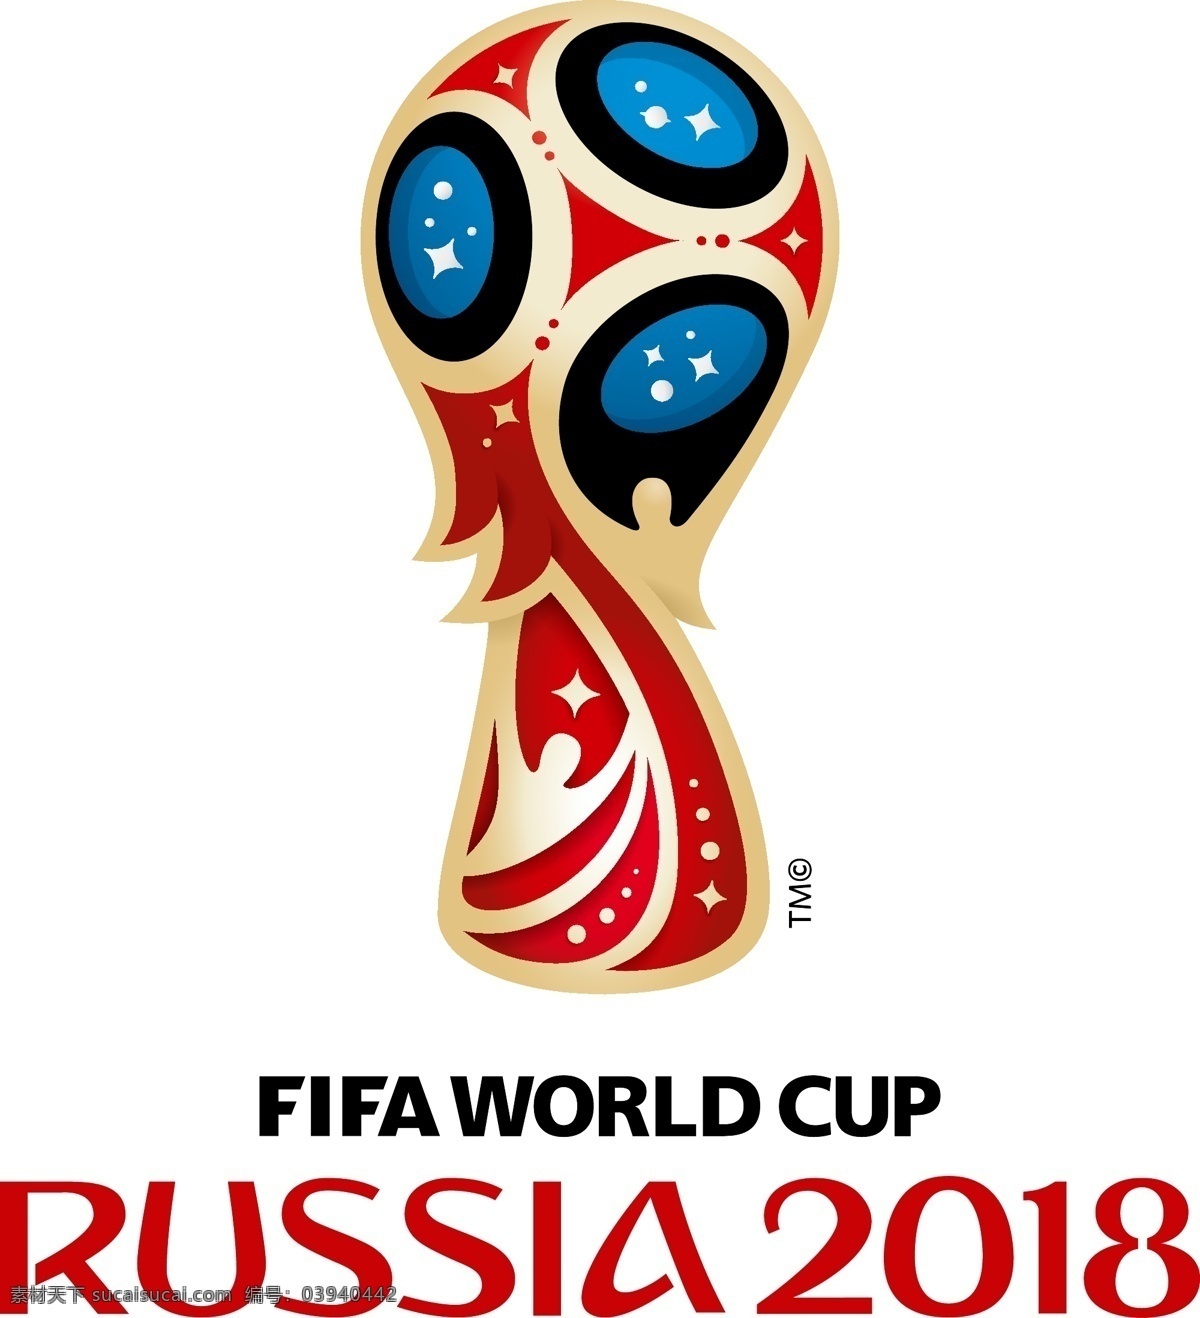 2018 俄罗斯 世界杯 徽标 logo设计 比赛 世界 足球 国际足联 杯赛 fifa worldcup 赛事徽标 矢量图